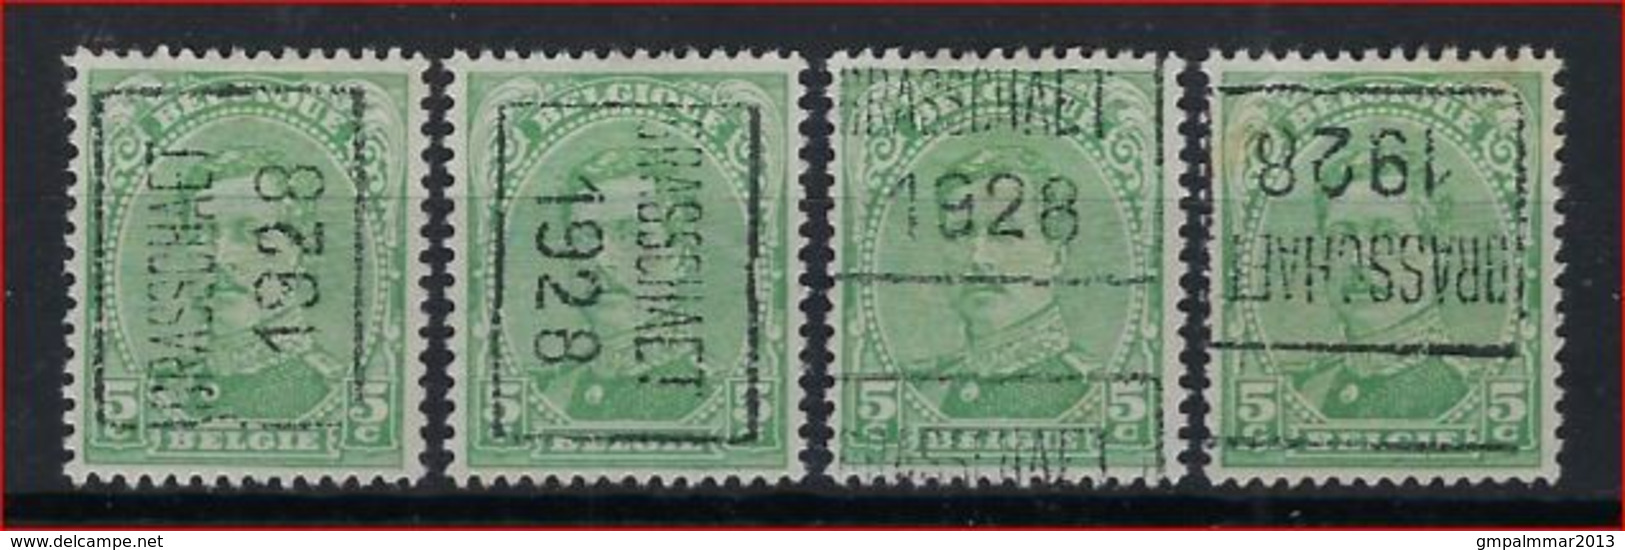 ALBERT I Nr. 137 Voorafgestempeld Nr. 4109 A + B + C + D   BRASSCHAET 1928 ; Staat Zie Scan ! - Roller Precancels 1920-29